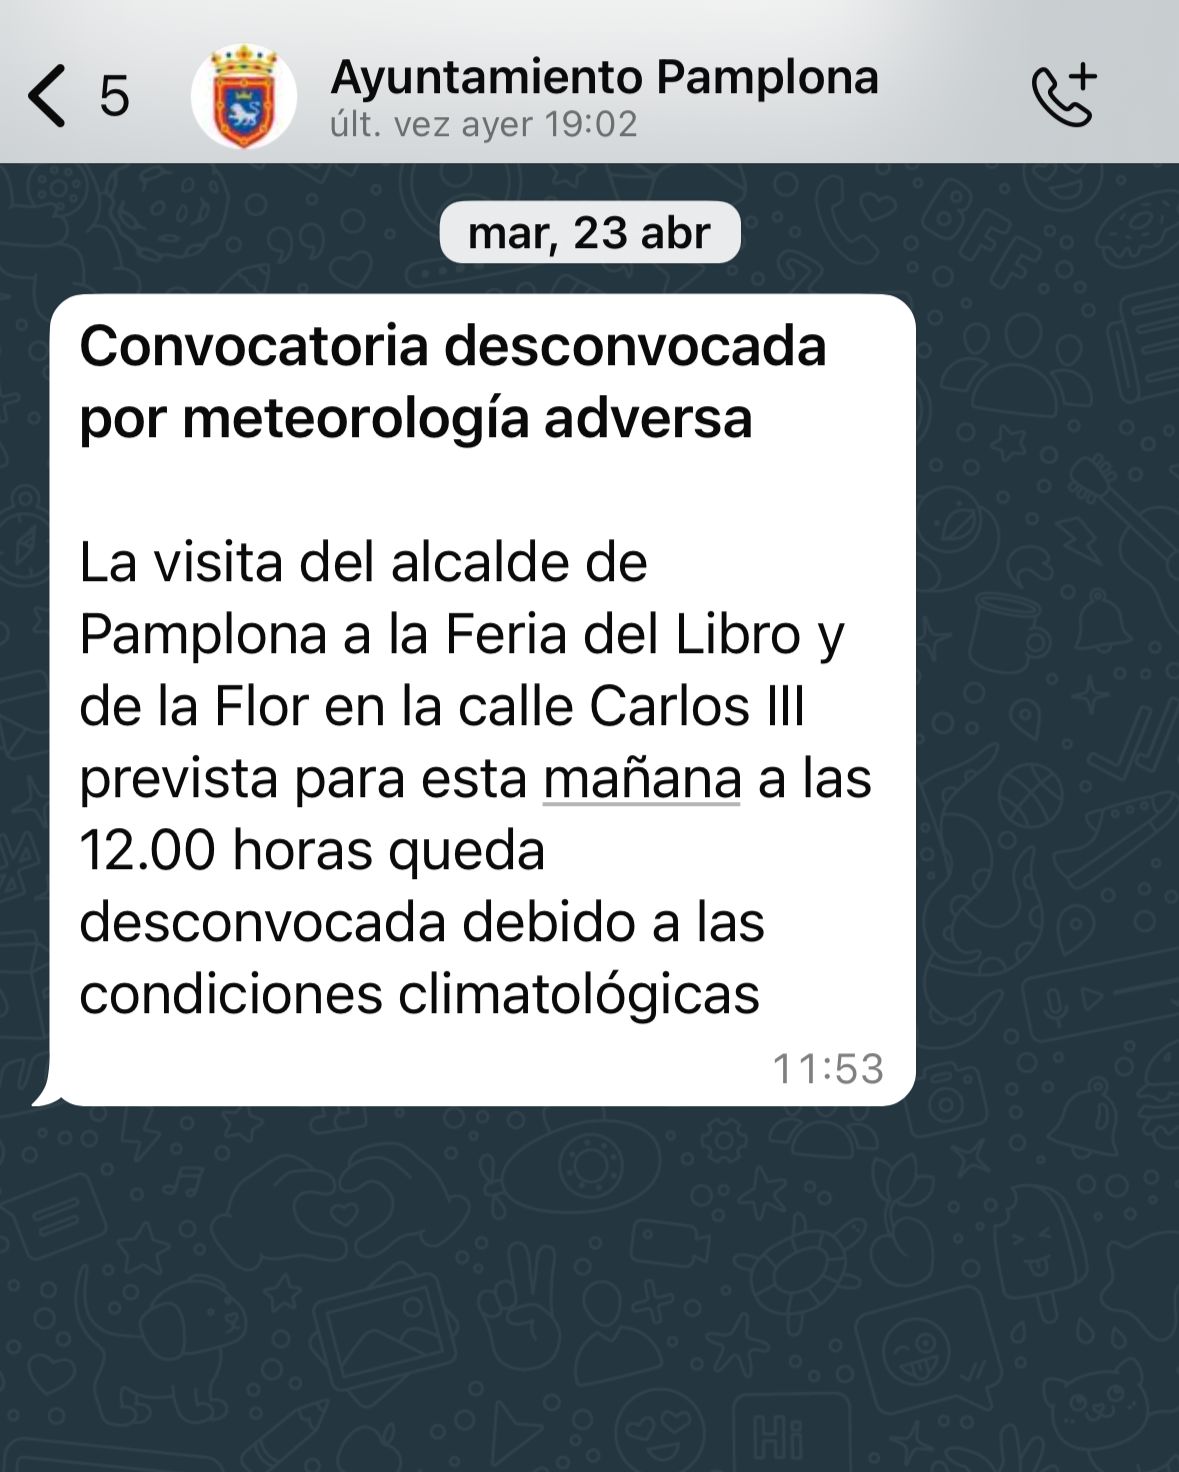 Mensaje enviado por el Gabinete de Comunicación del Ayuntamiento de Pamplona a los medios el martes 23 de abril a las 11:53 del mediodía desconvocando el acto institucional.